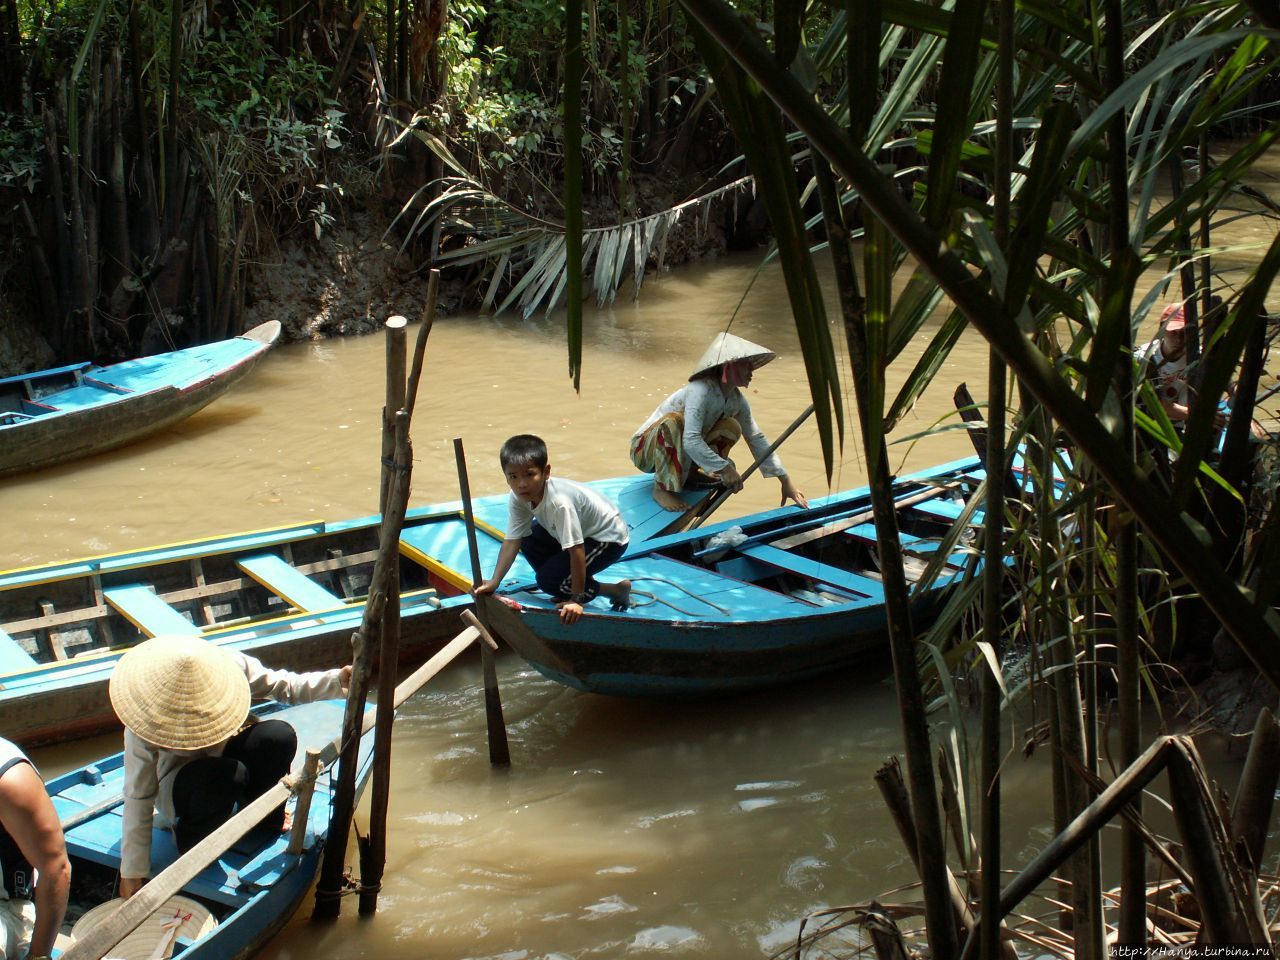 Дельта реки  Меконг. Посадка на местные лодки Дельта реки Меконг, Вьетнам